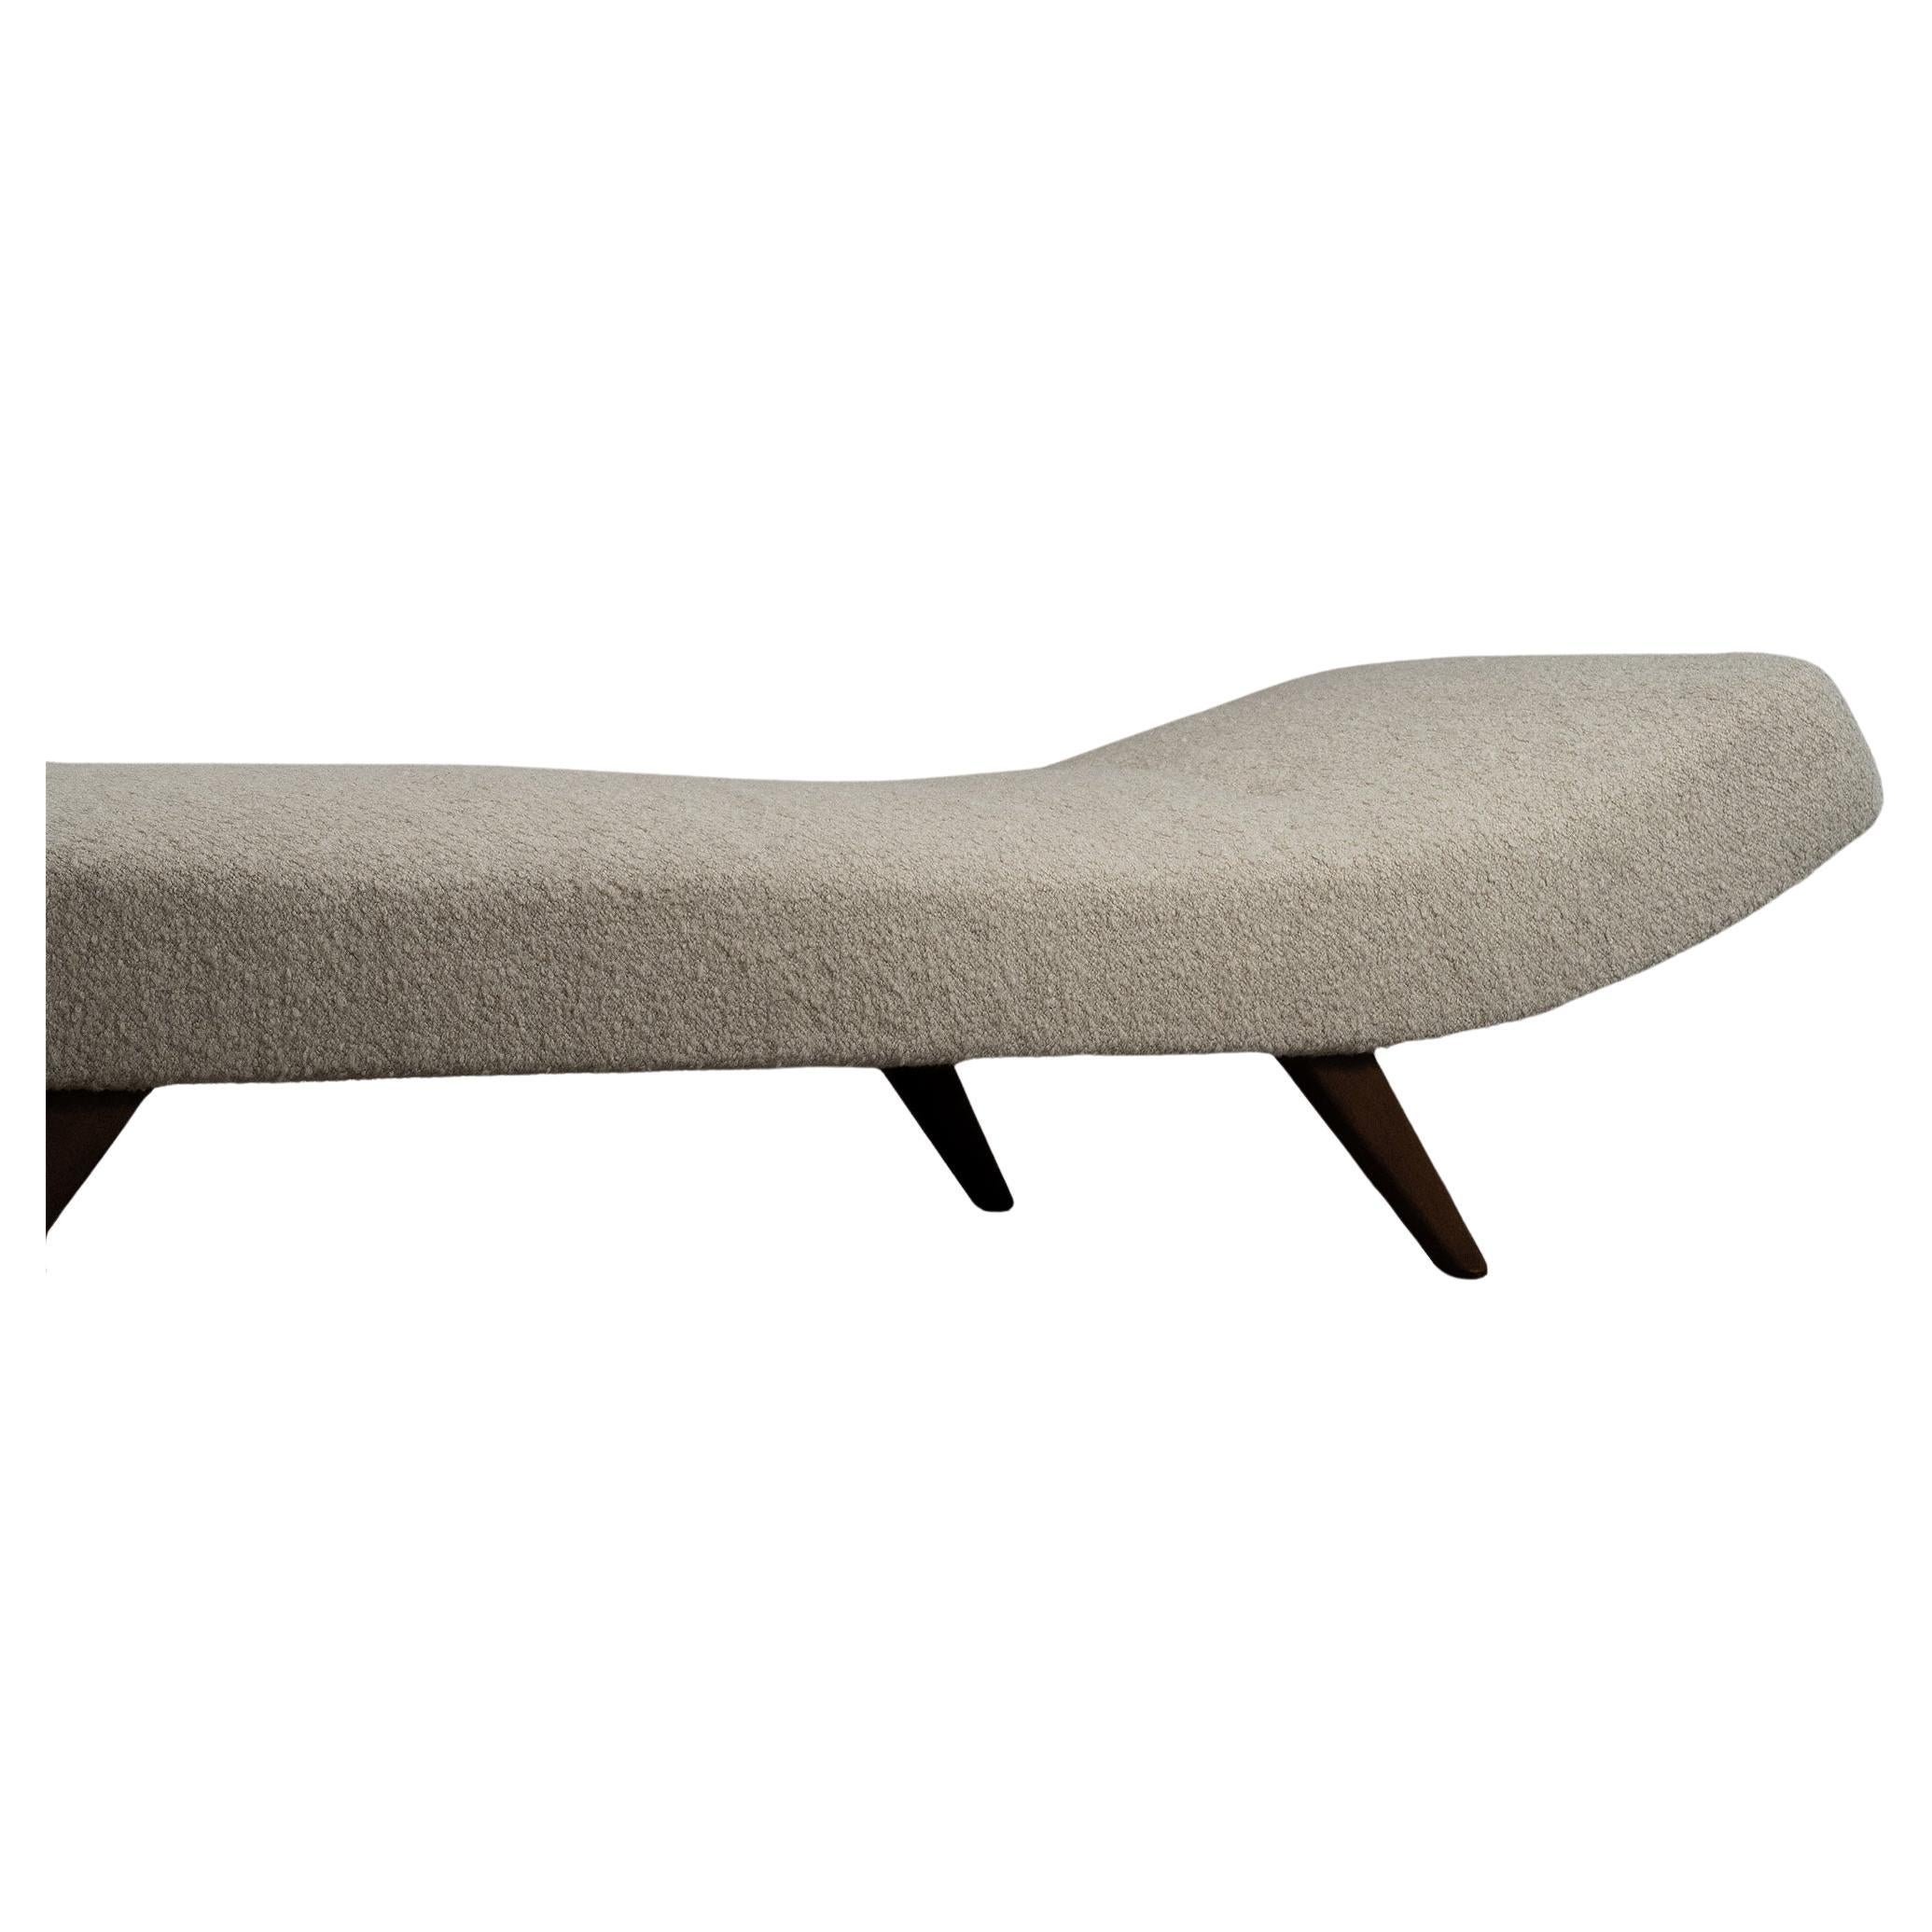 Modernes, minimalistisches und elegantes Daybed, inspiriert vom klassischen dänischen Möbeldesign. Das Daybed verfügt über eine einzelne lange Matratze mit Knopftufting, die für mehr Tiefe sorgt. Die dunklen Holzbeine wurden neu geölt, und die